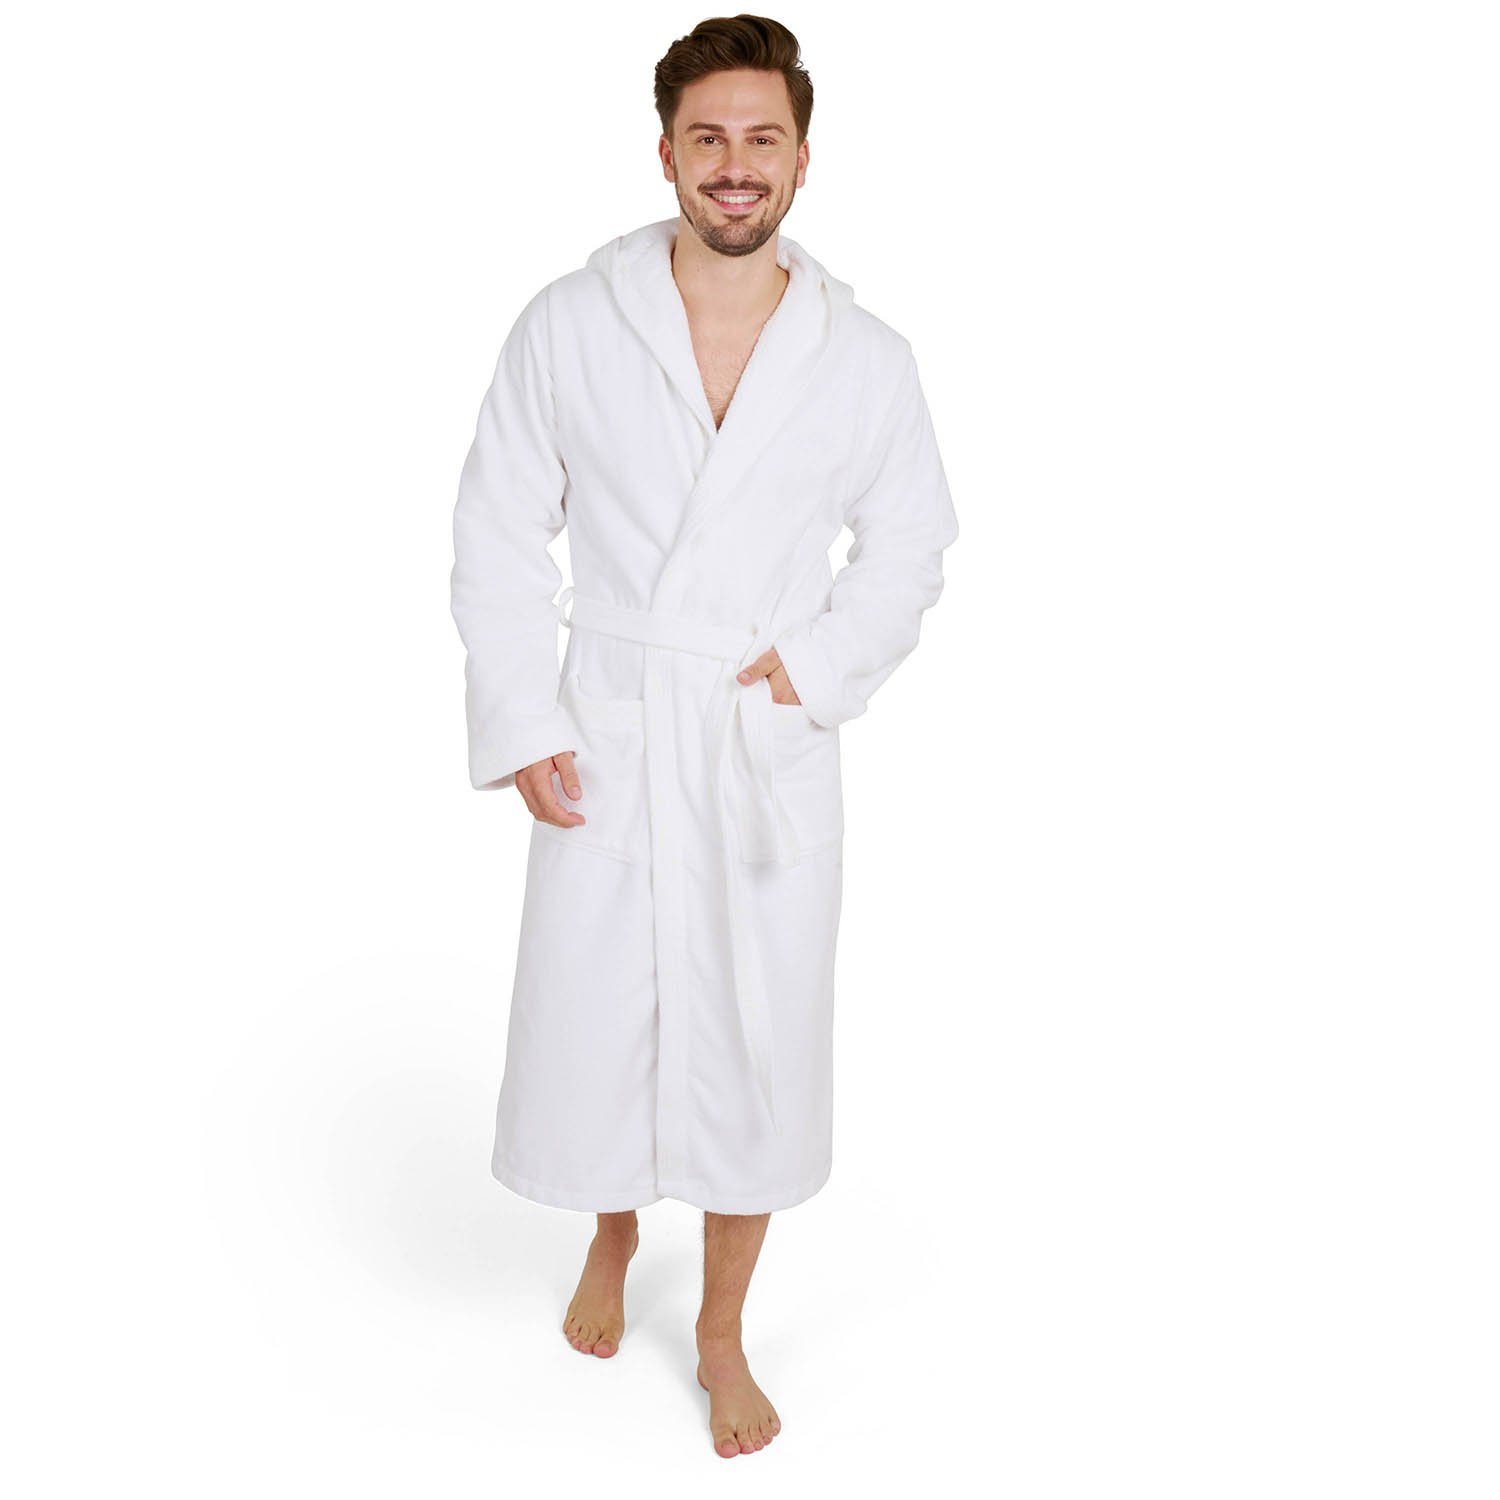 Weiße Herren Bademäntel online kaufen | OTTO